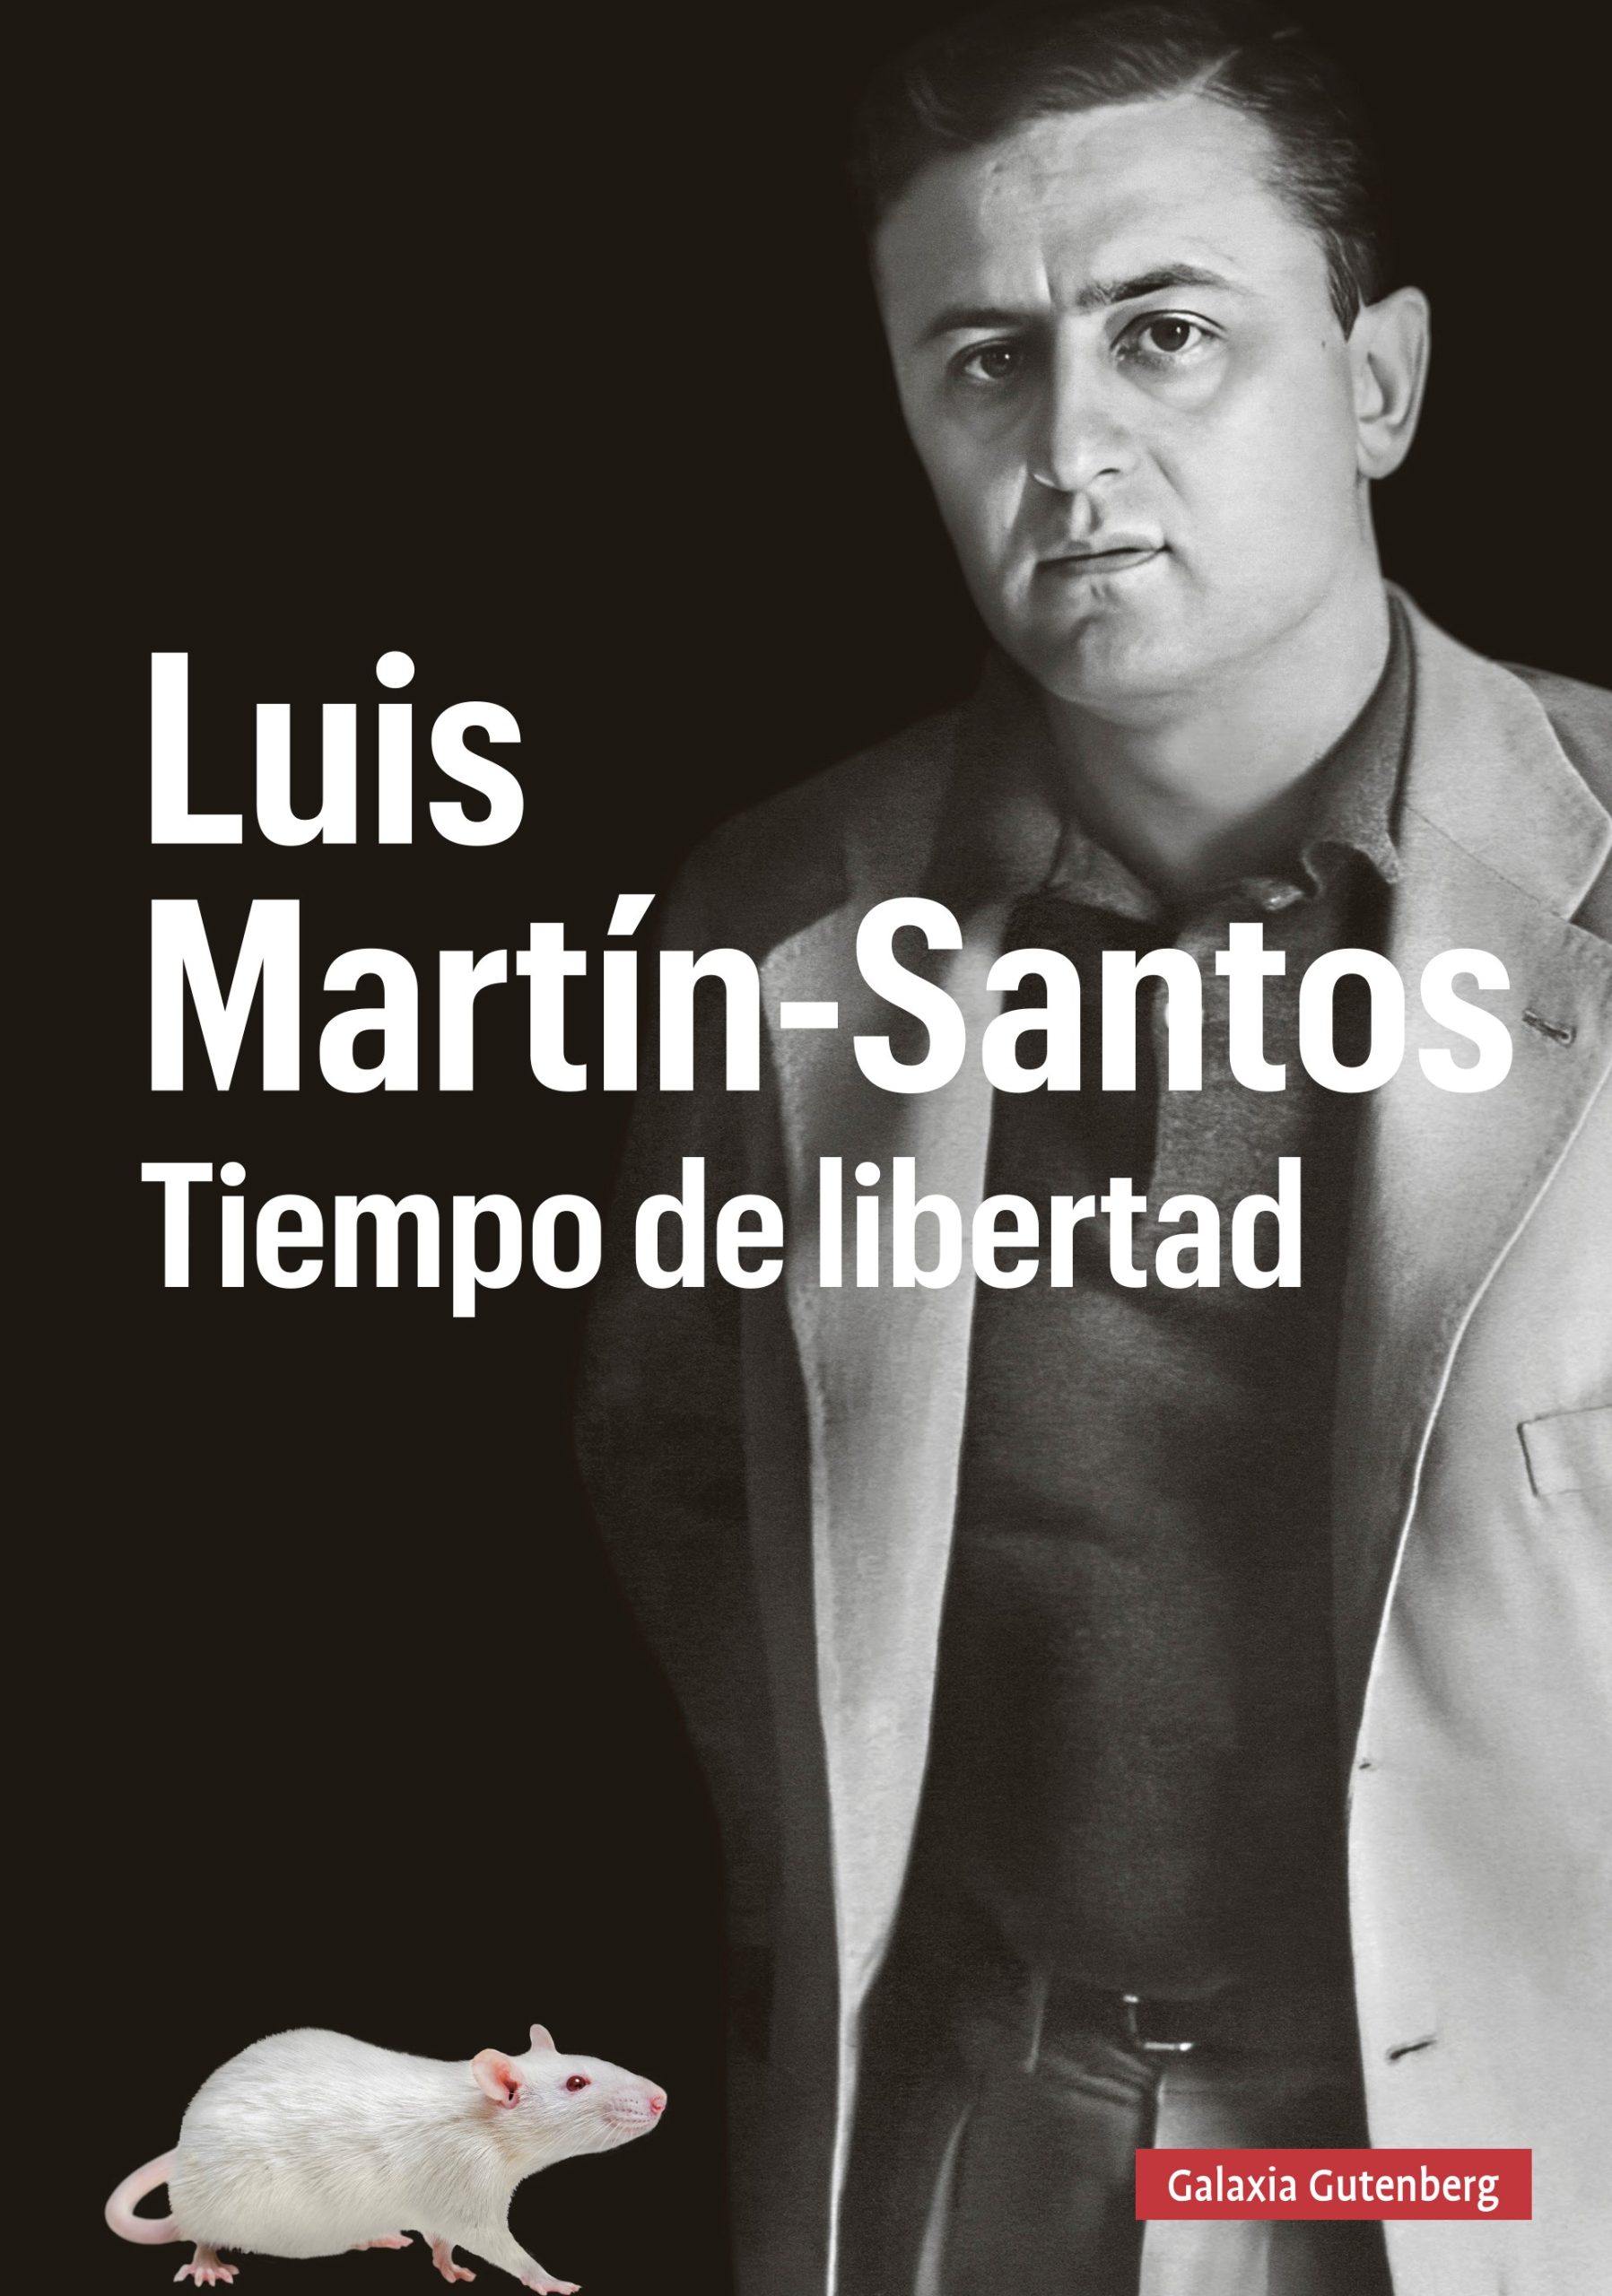 Luis Martín-Santos